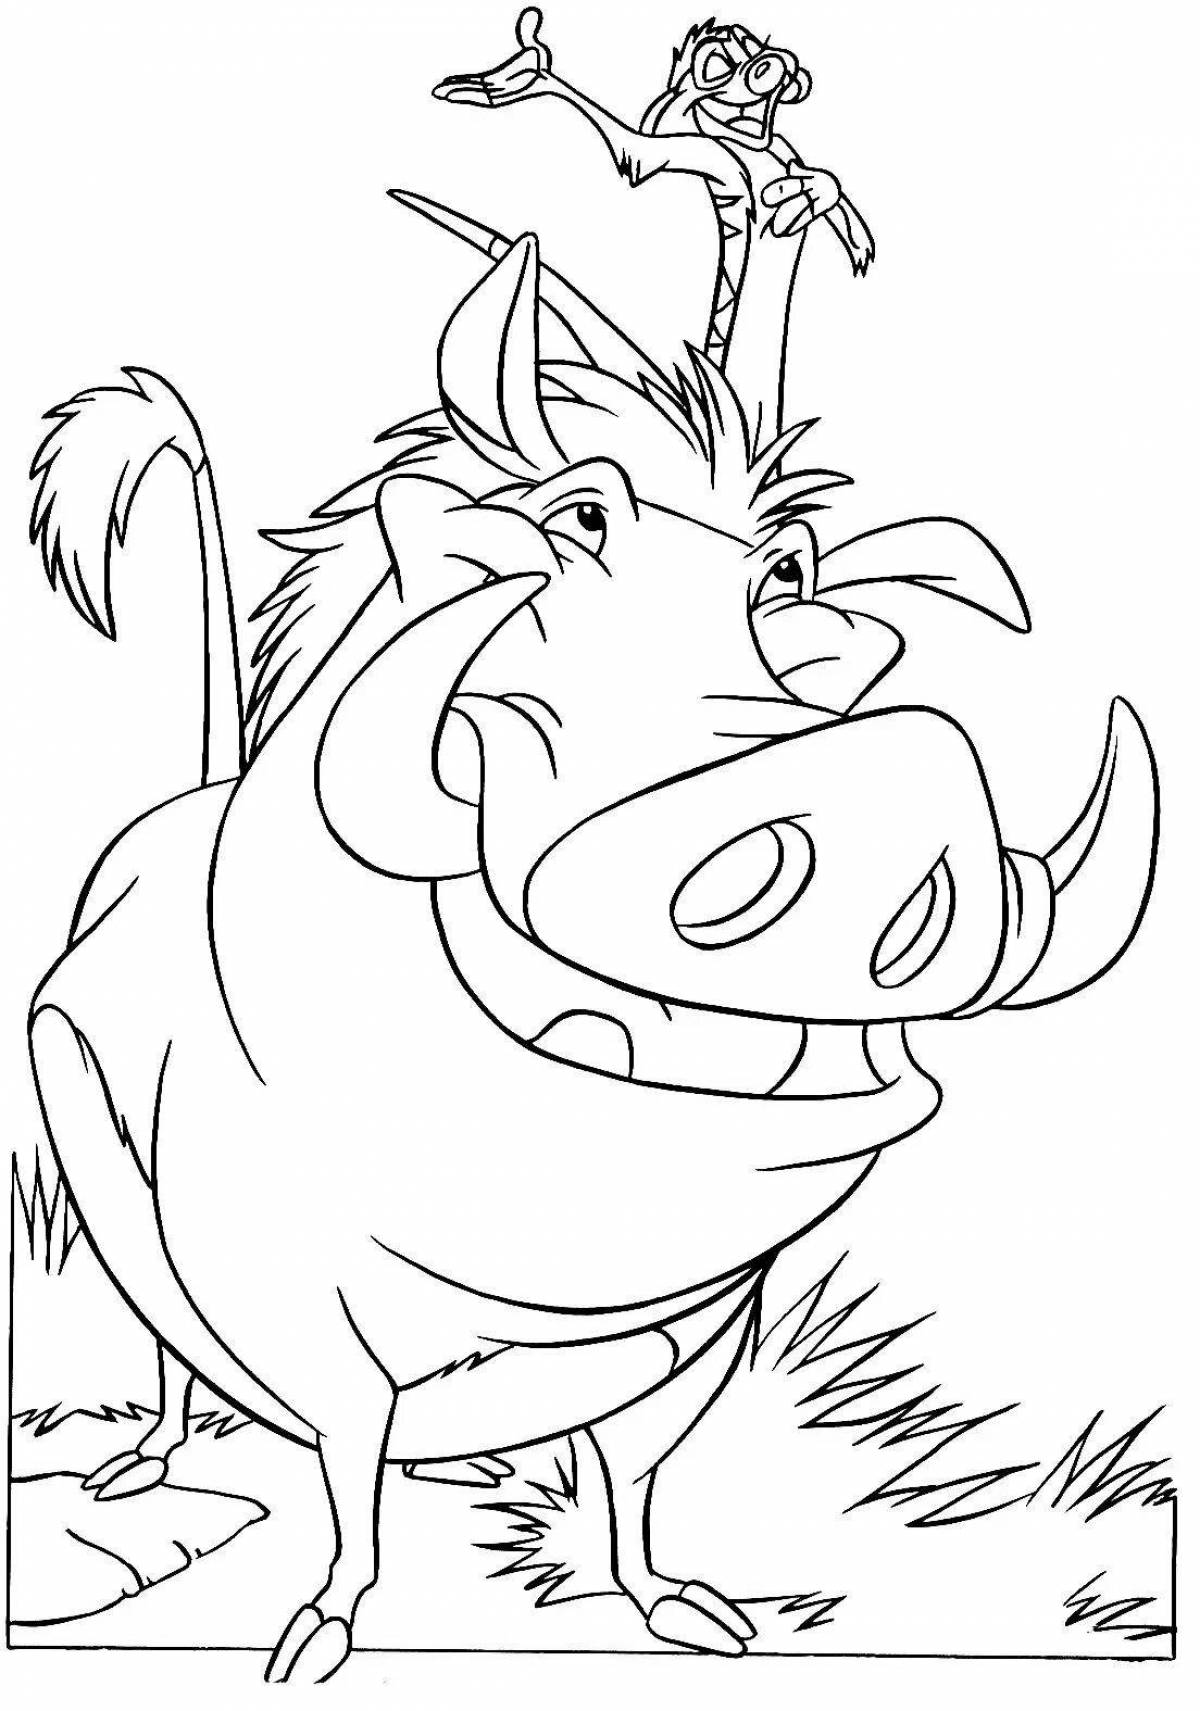 Timon and Pumbaa fun coloring book